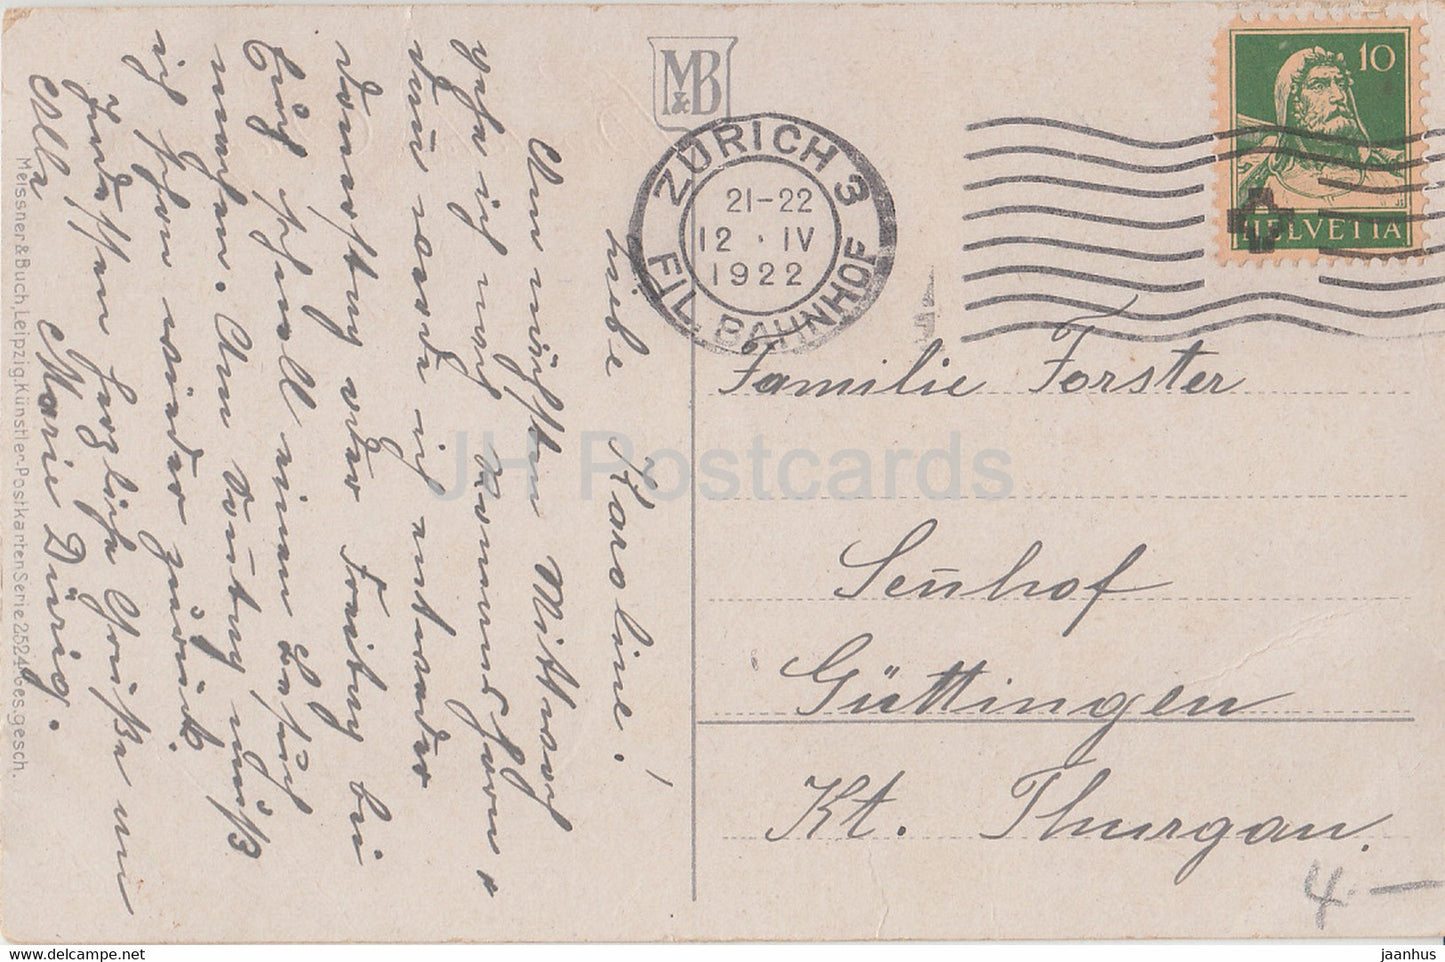 Ostergrußkarte - Herzlicher Ostergruss - Glocken - Blumen - MB 2524 - alte Postkarte - 1922 - Deutschland - gebraucht